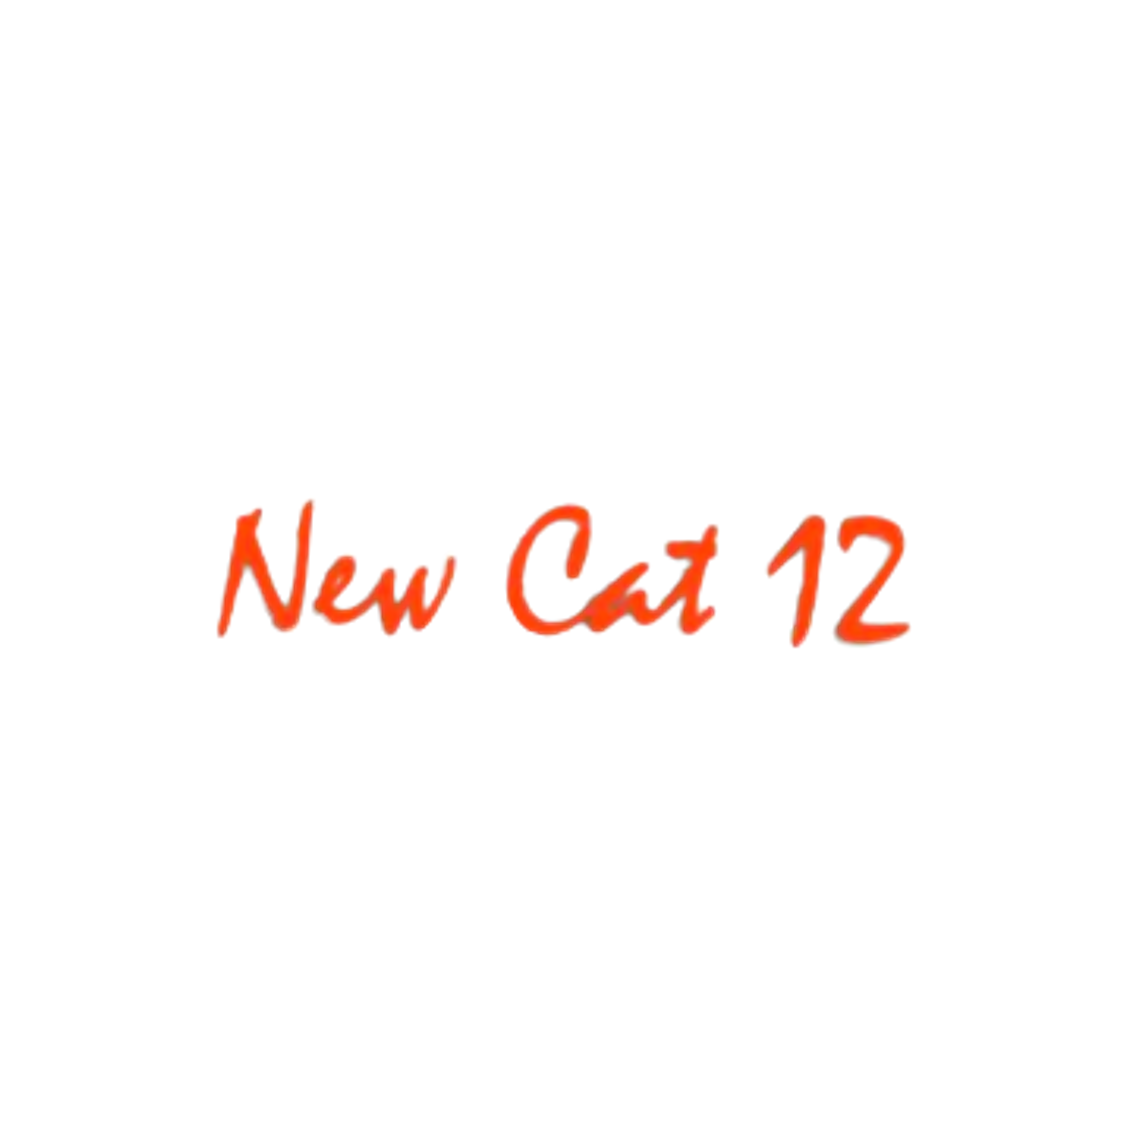 Kompatibel New Cat 12